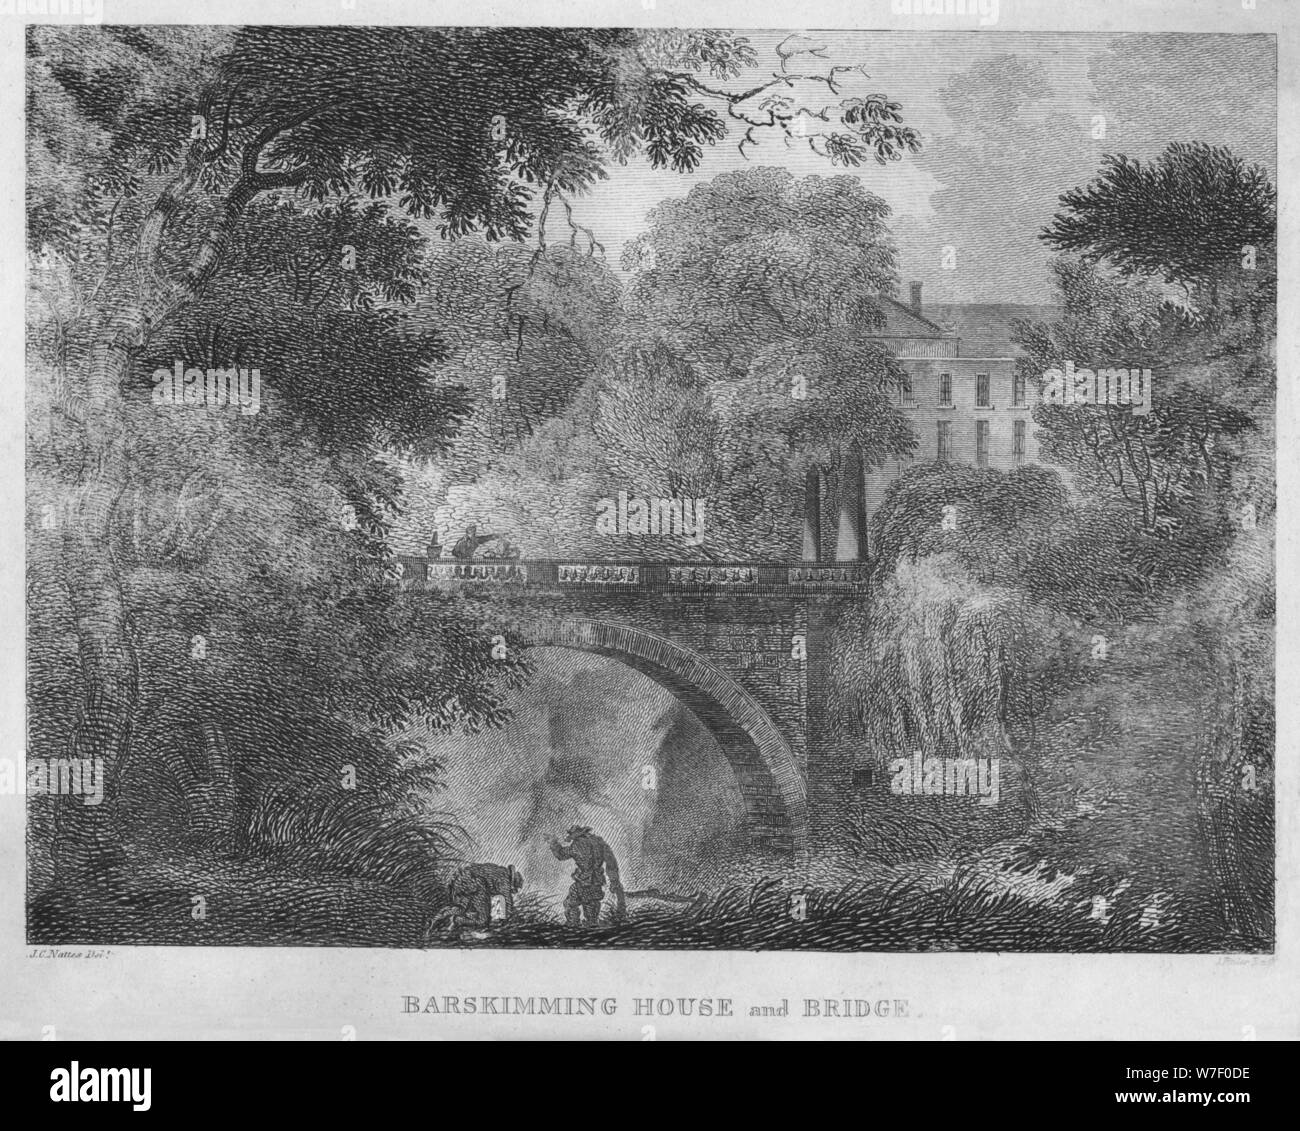 'Barskimming House and Bridge', 1804. Artist: James Fittler. Stock Photo